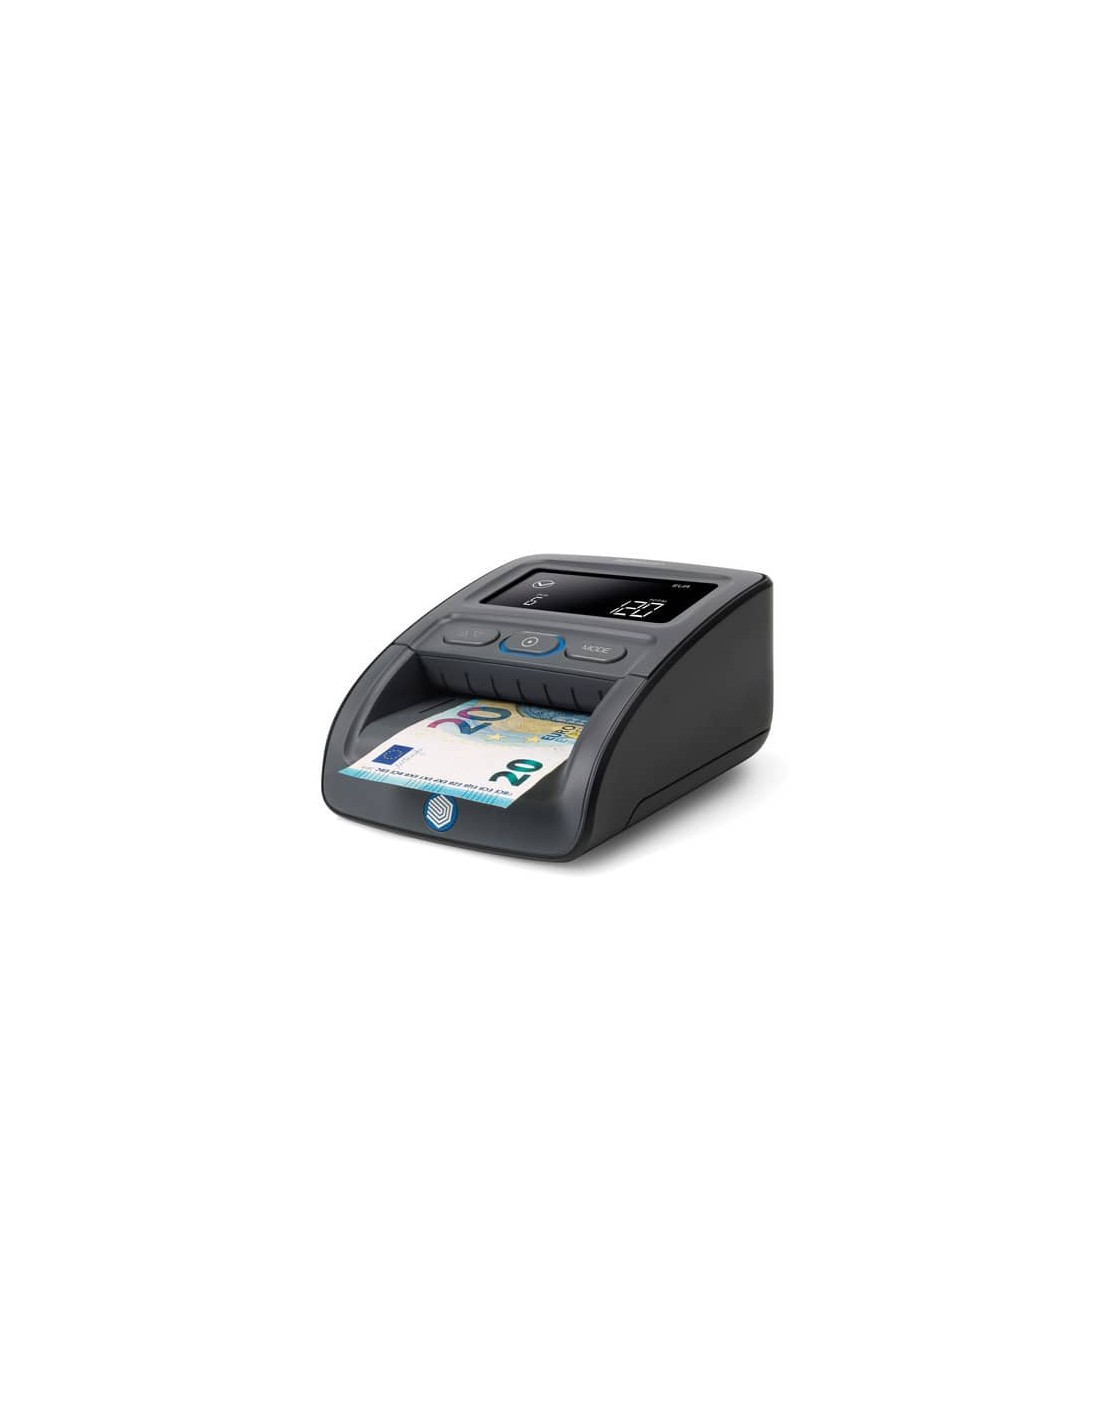 Verificatore automatico di banconote false 155-S G2 Safescan nero 112-0668